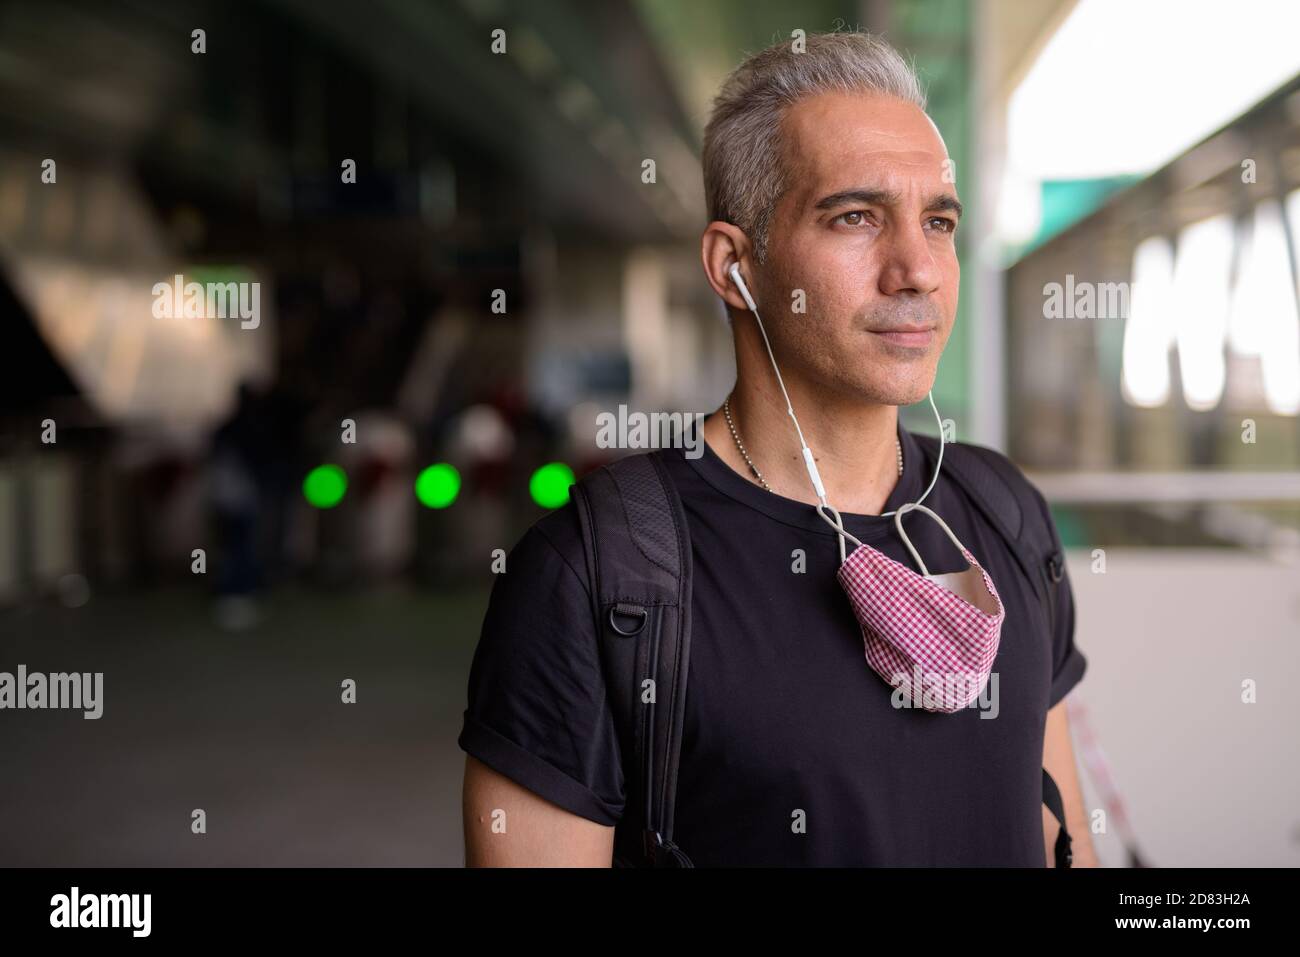 Ritratto dell'uomo persiano con maschera che pensa al cielo stazione ferroviaria Foto Stock